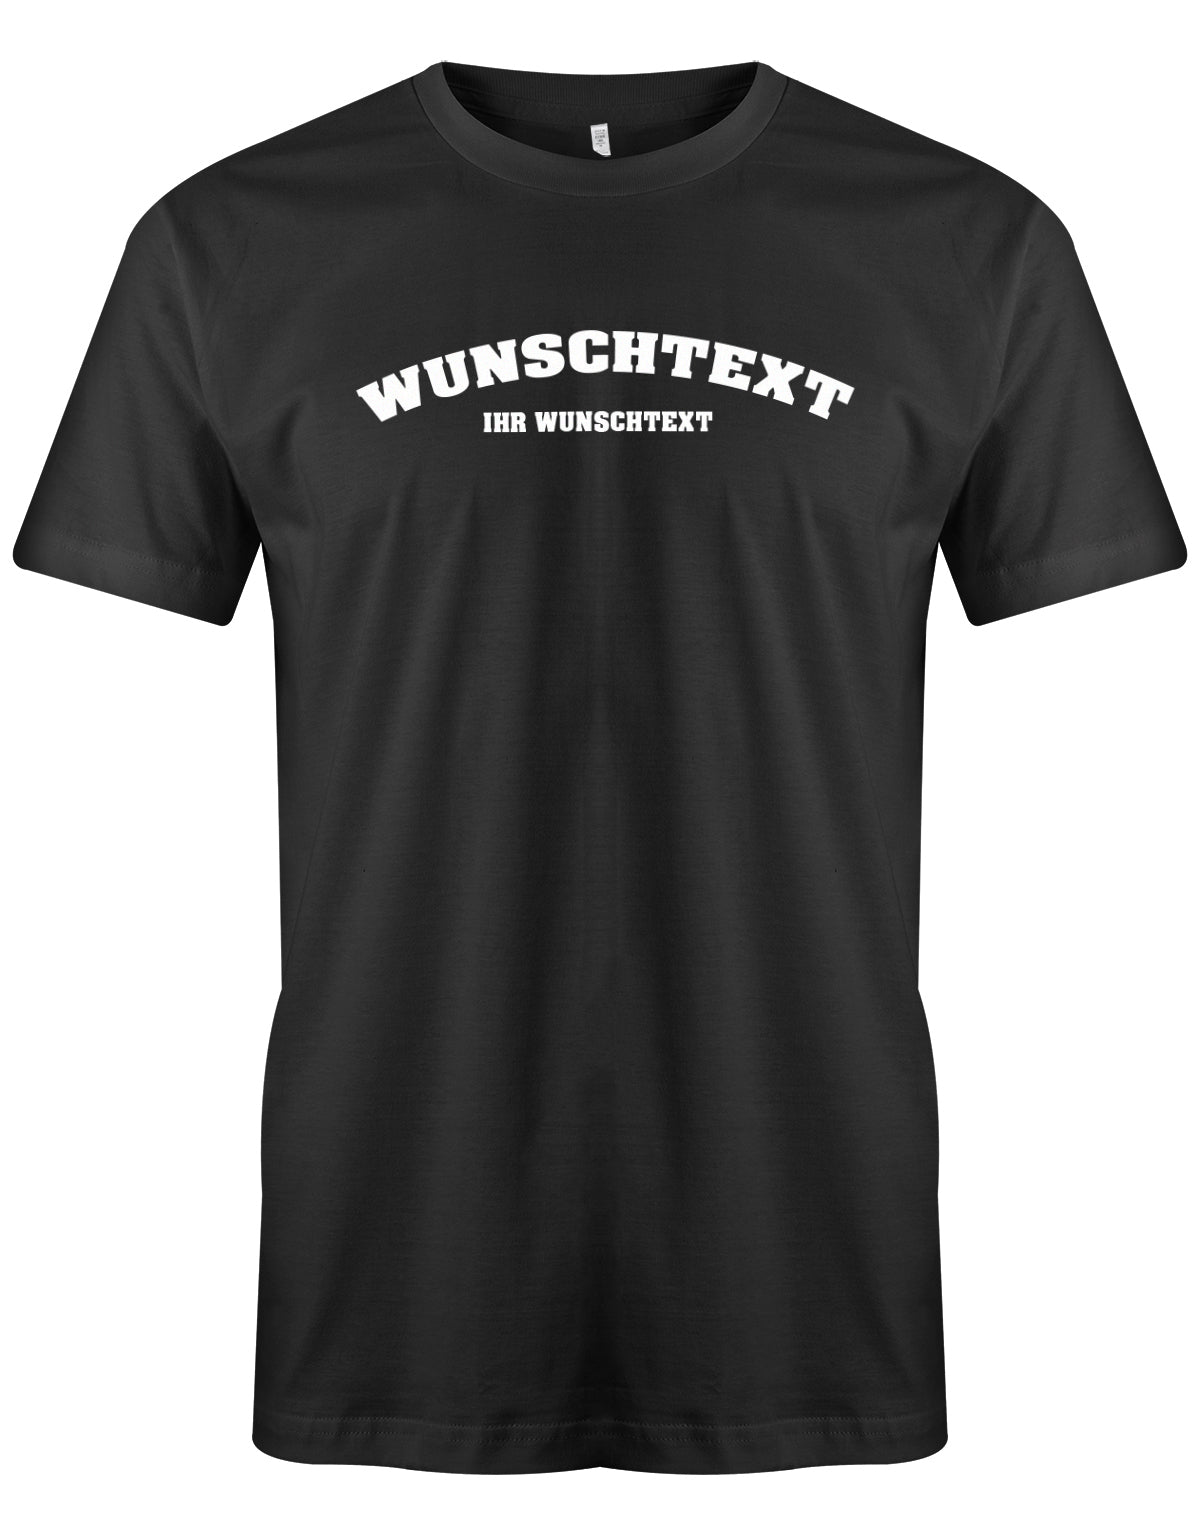 Männer Tshirt mit Wunschtext.  Abgerundeter Text im Collage-Style. Schwarz